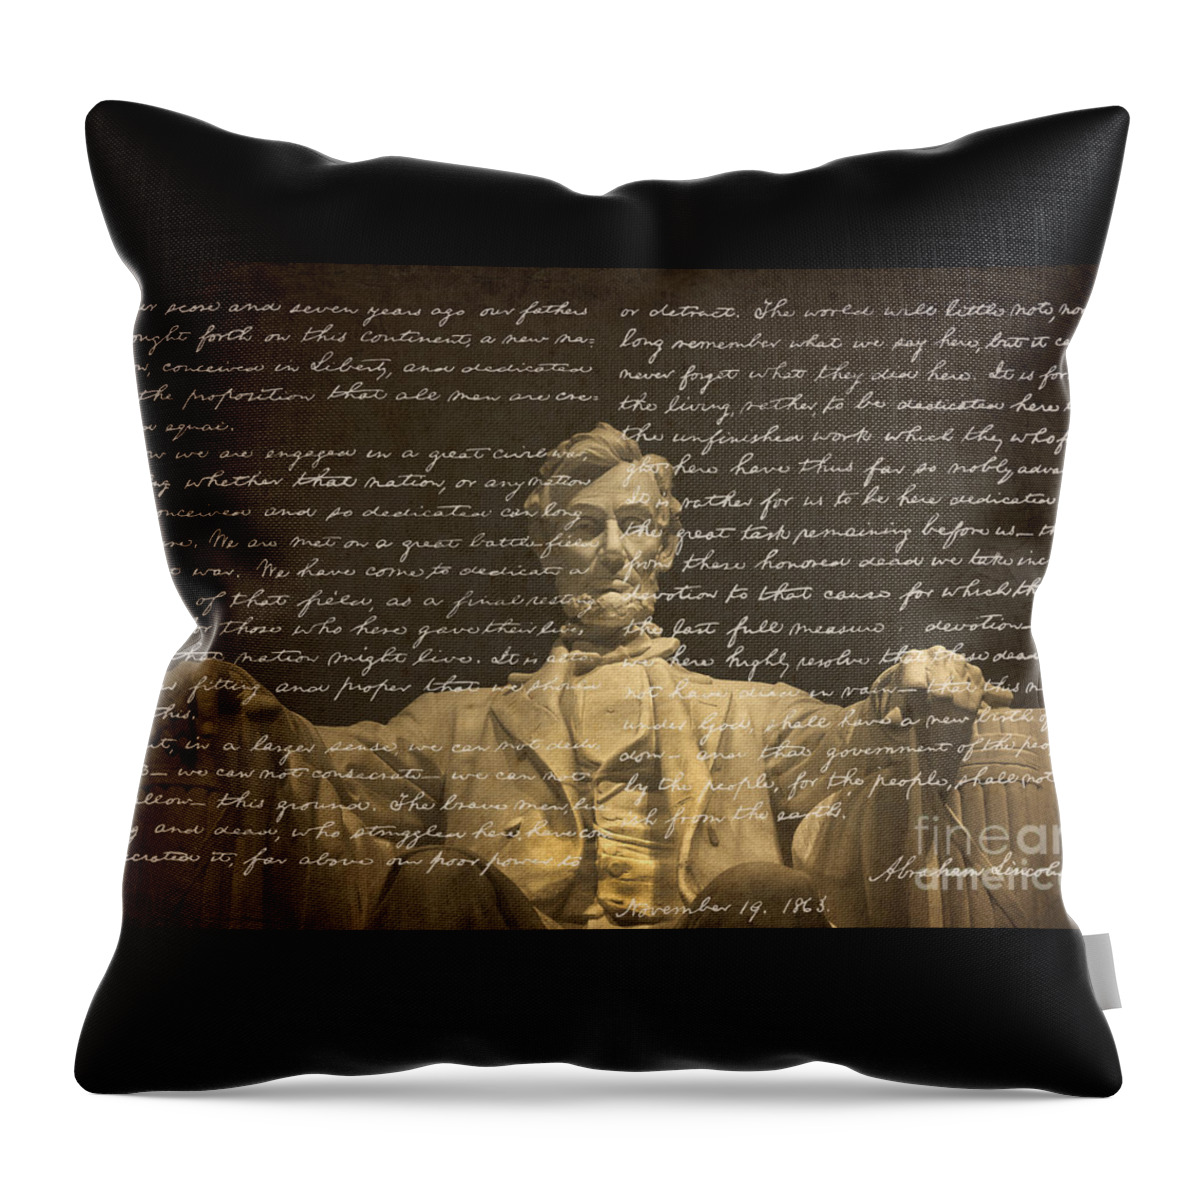 Gettysburg Address Throw Pillow featuring the photograph Gettysburg Address by Diane Diederich